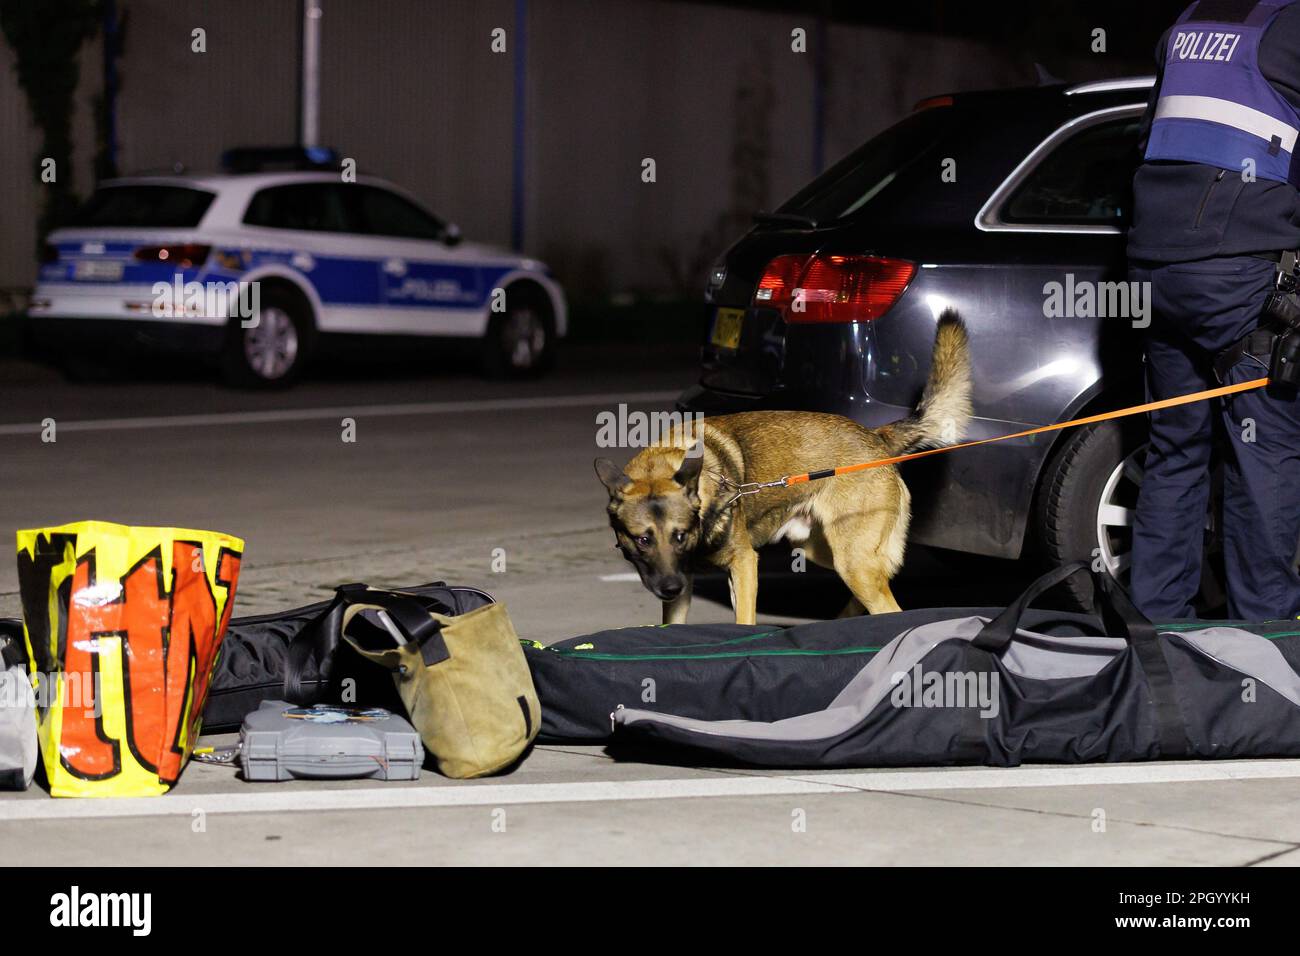 Armsheim, Allemagne. 23rd mars 2023. Un chien de détection de stupéfiants en lixiviation est vu entre les bagages et une voiture de tourisme à un point de contrôle majeur pour lutter contre les explosions de ATM. Credit: Jörg Halisch/dpa/Alamy Live News Banque D'Images